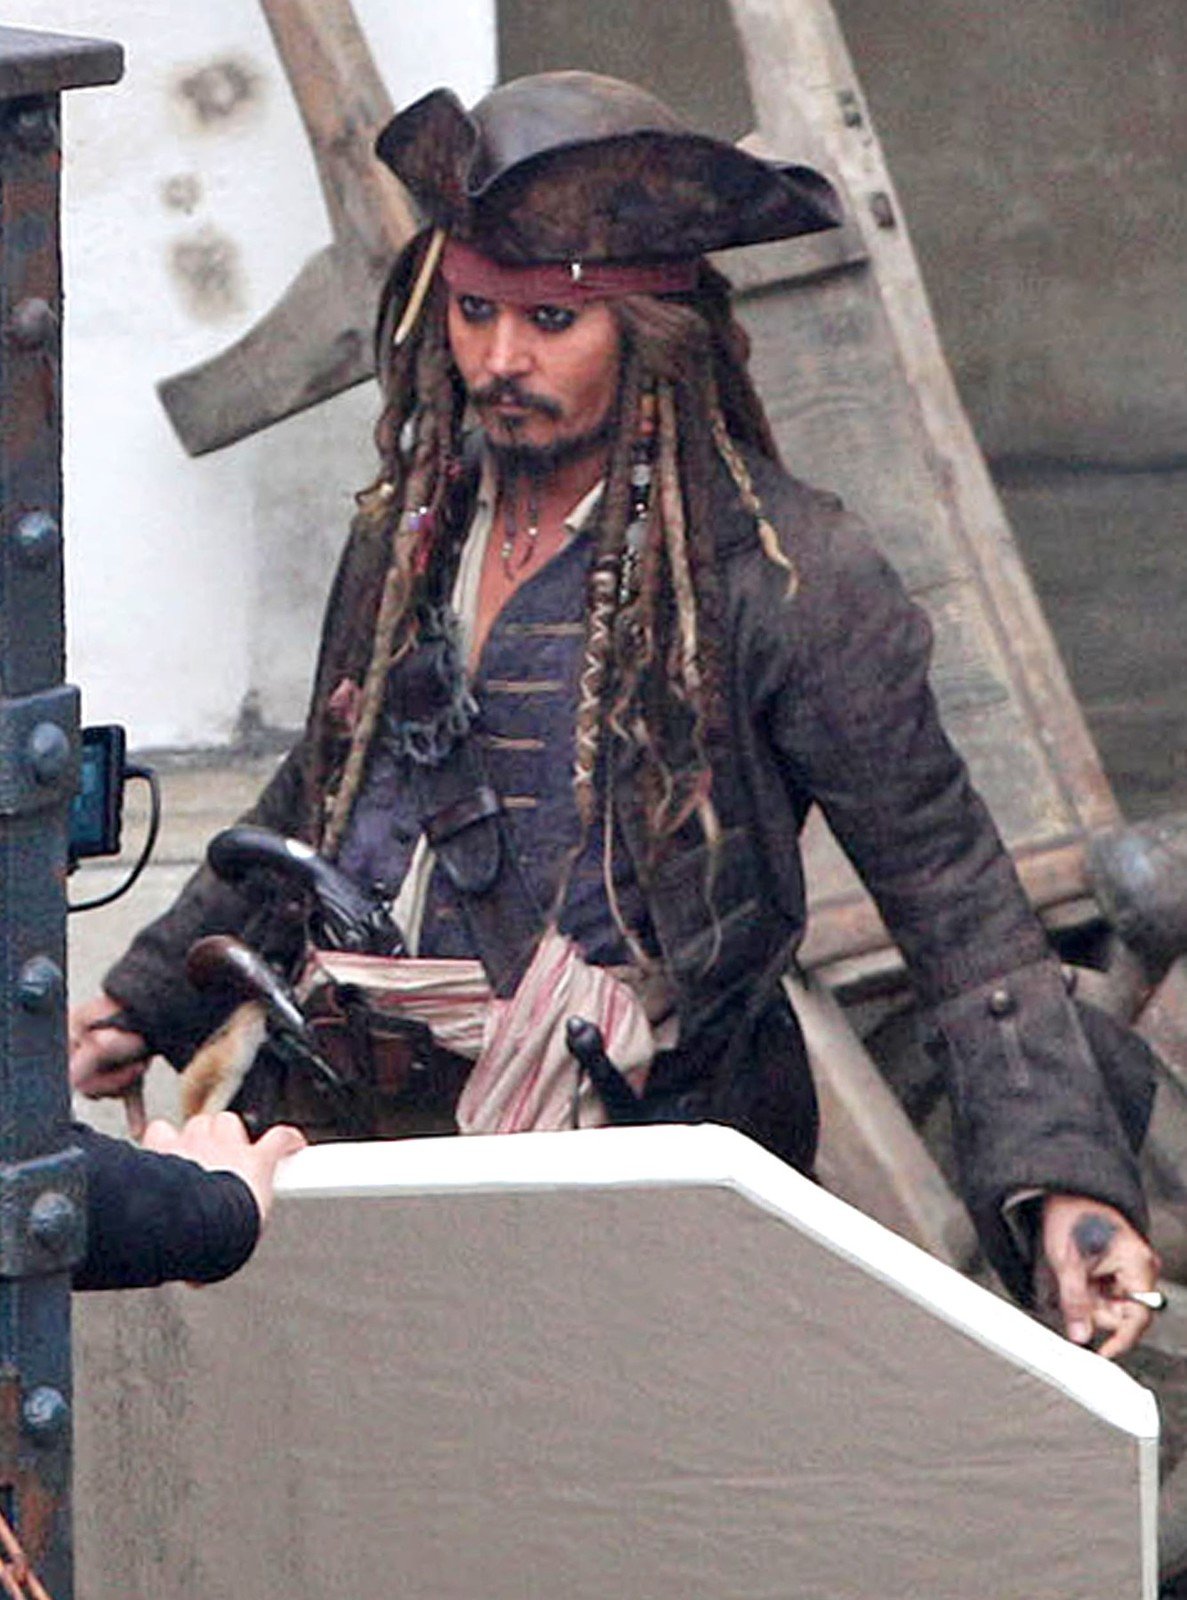 Johny Depp v Pirátech z Karibiku